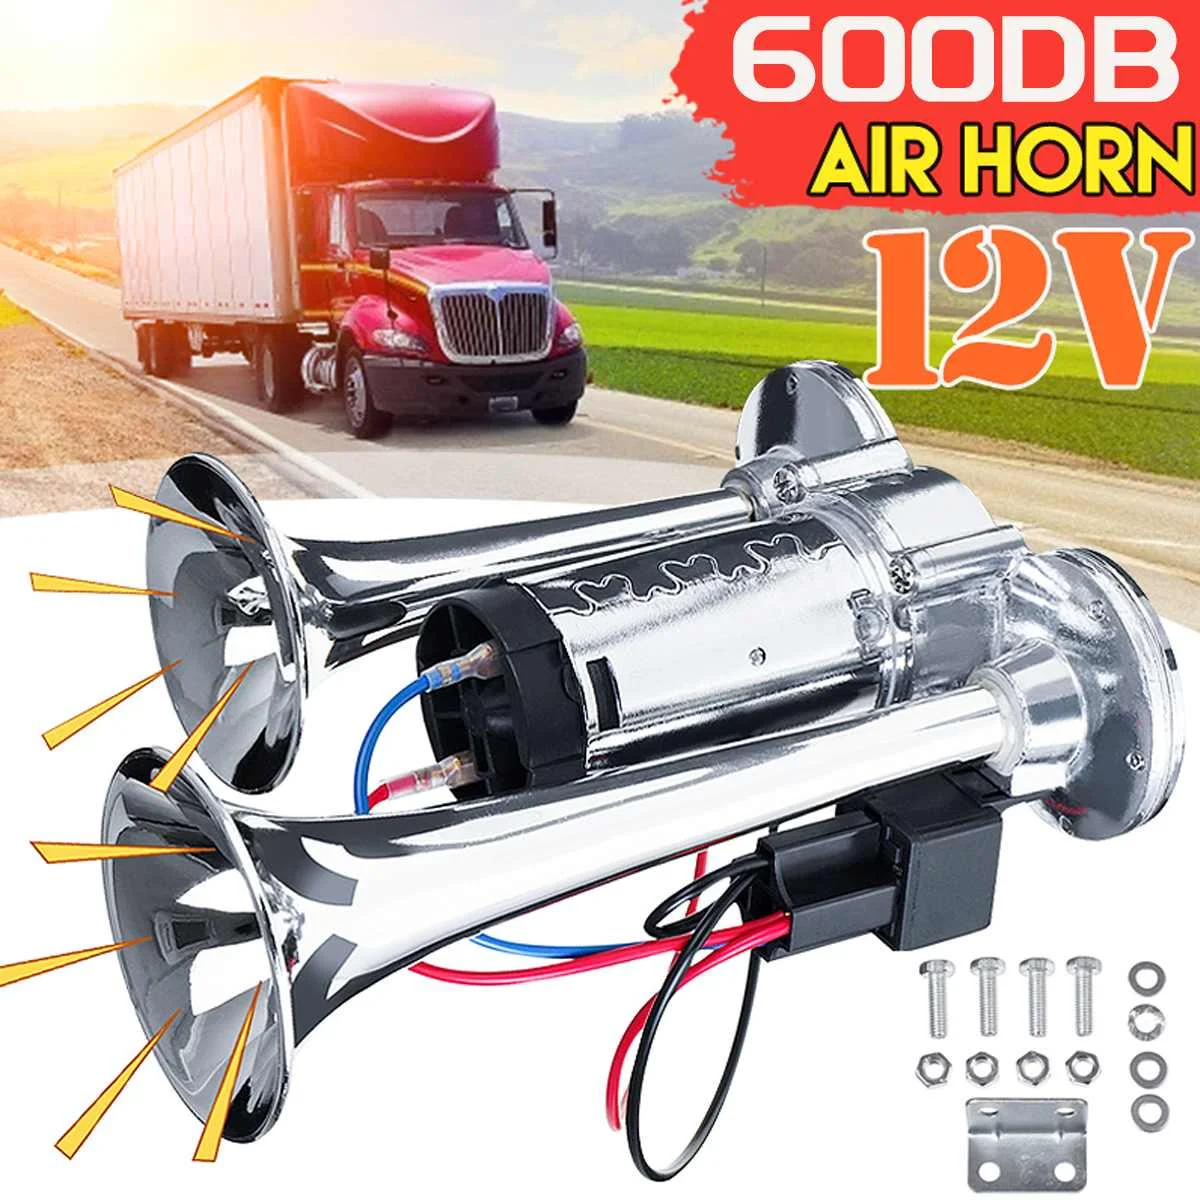  TESSTSY Bocina de tren de 600 dB para camión, kit de bocina de  aire eléctrica súper fuerte de 12 V con compresor para automóvil, camiones,  tren de impacto, camioneta, camión, barco